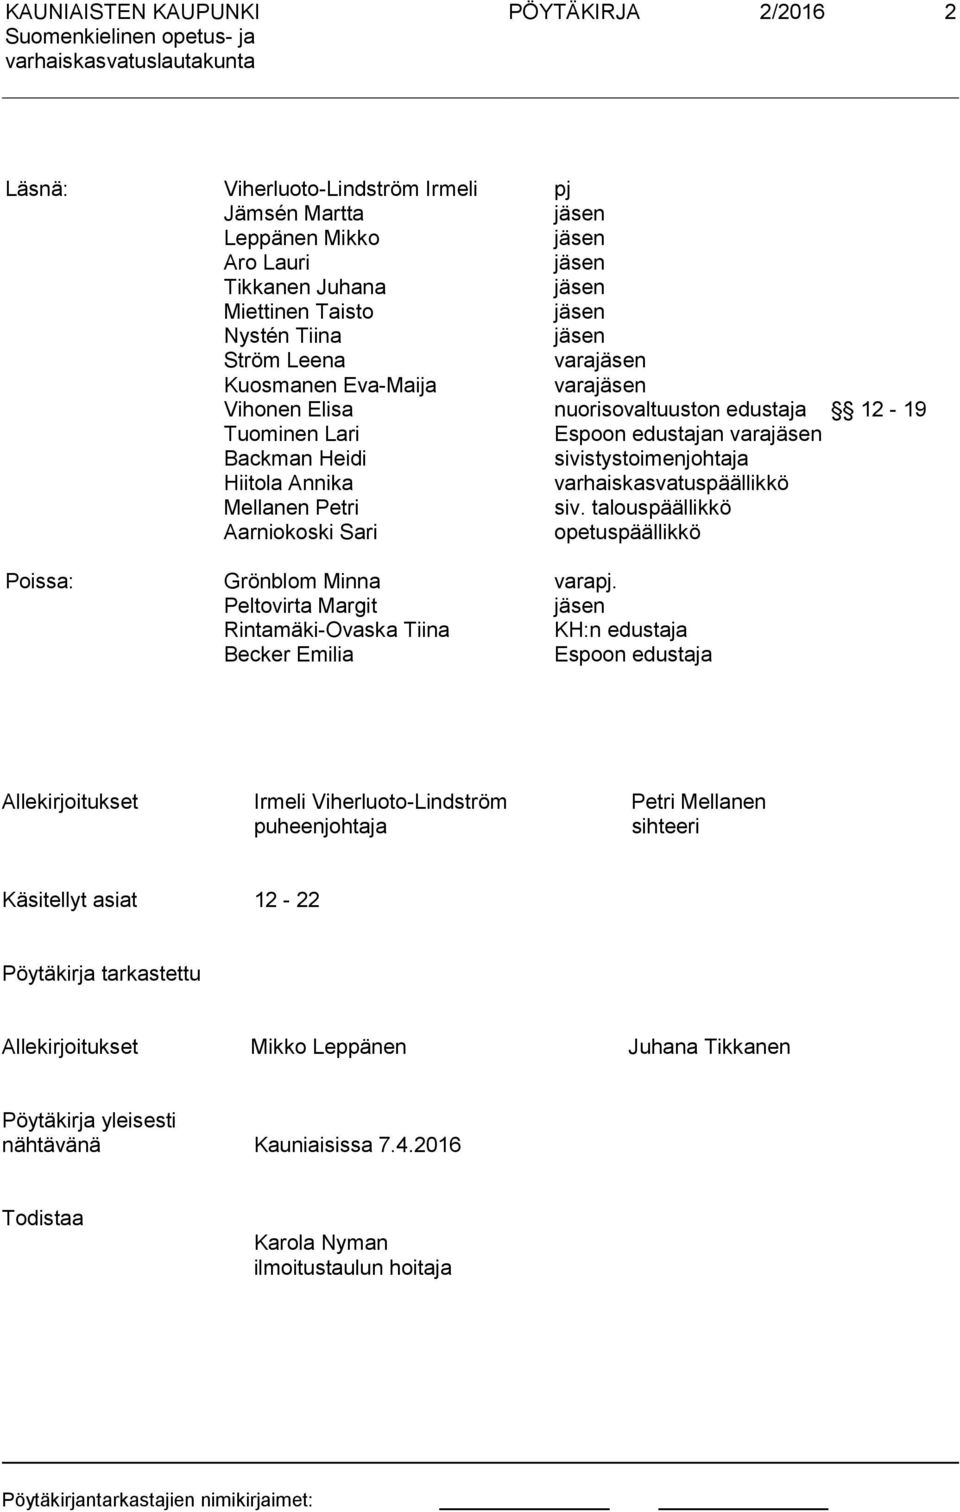 varhaiskasvatuspäällikkö Mellanen Petri siv. talouspäällikkö Aarniokoski Sari opetuspäällikkö Poissa: Grönblom Minna varapj.